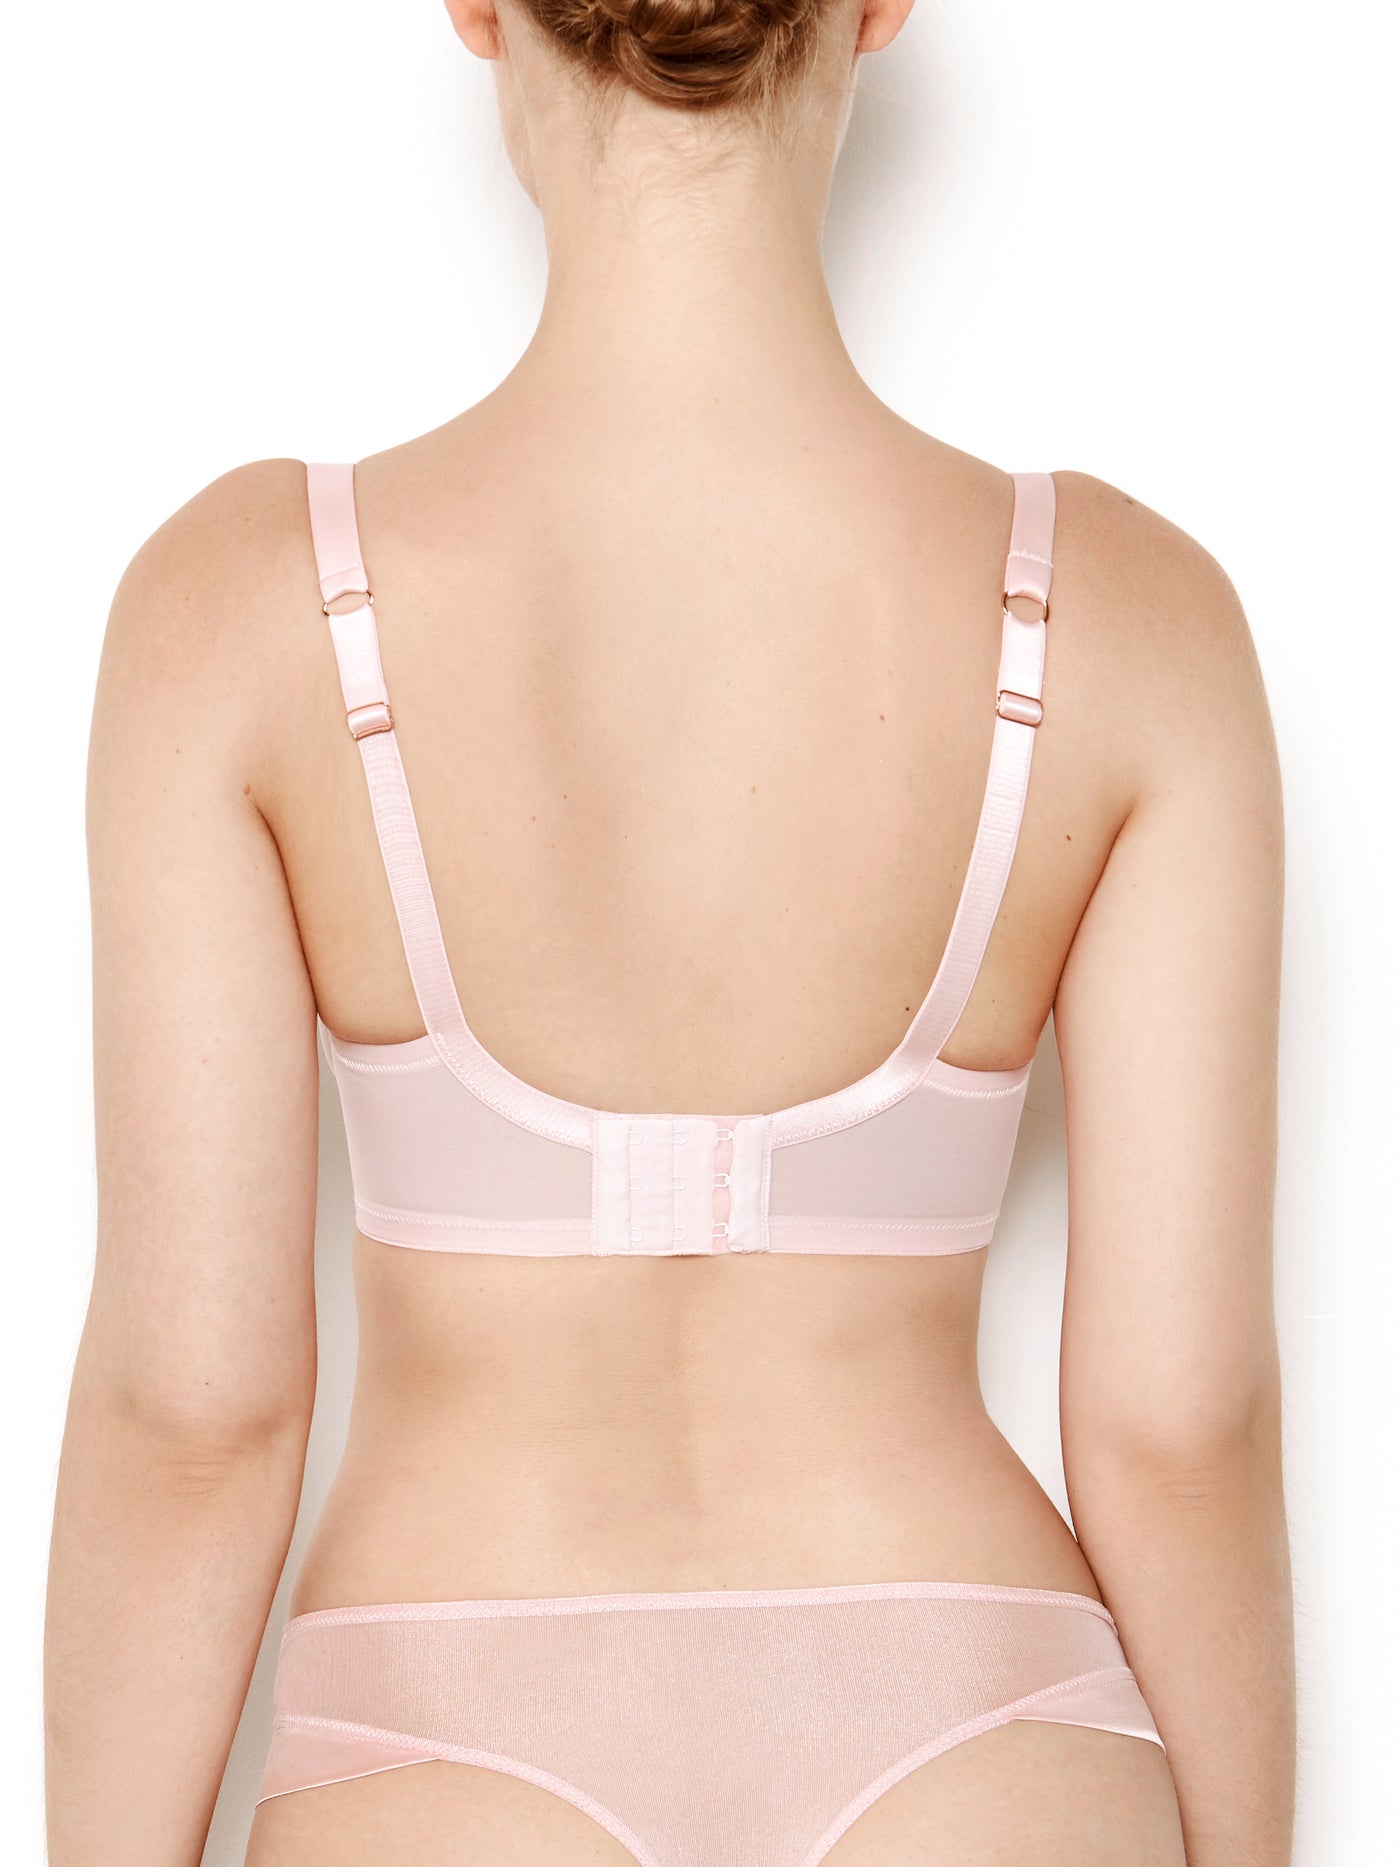 Nina rose pink mesh bra back view